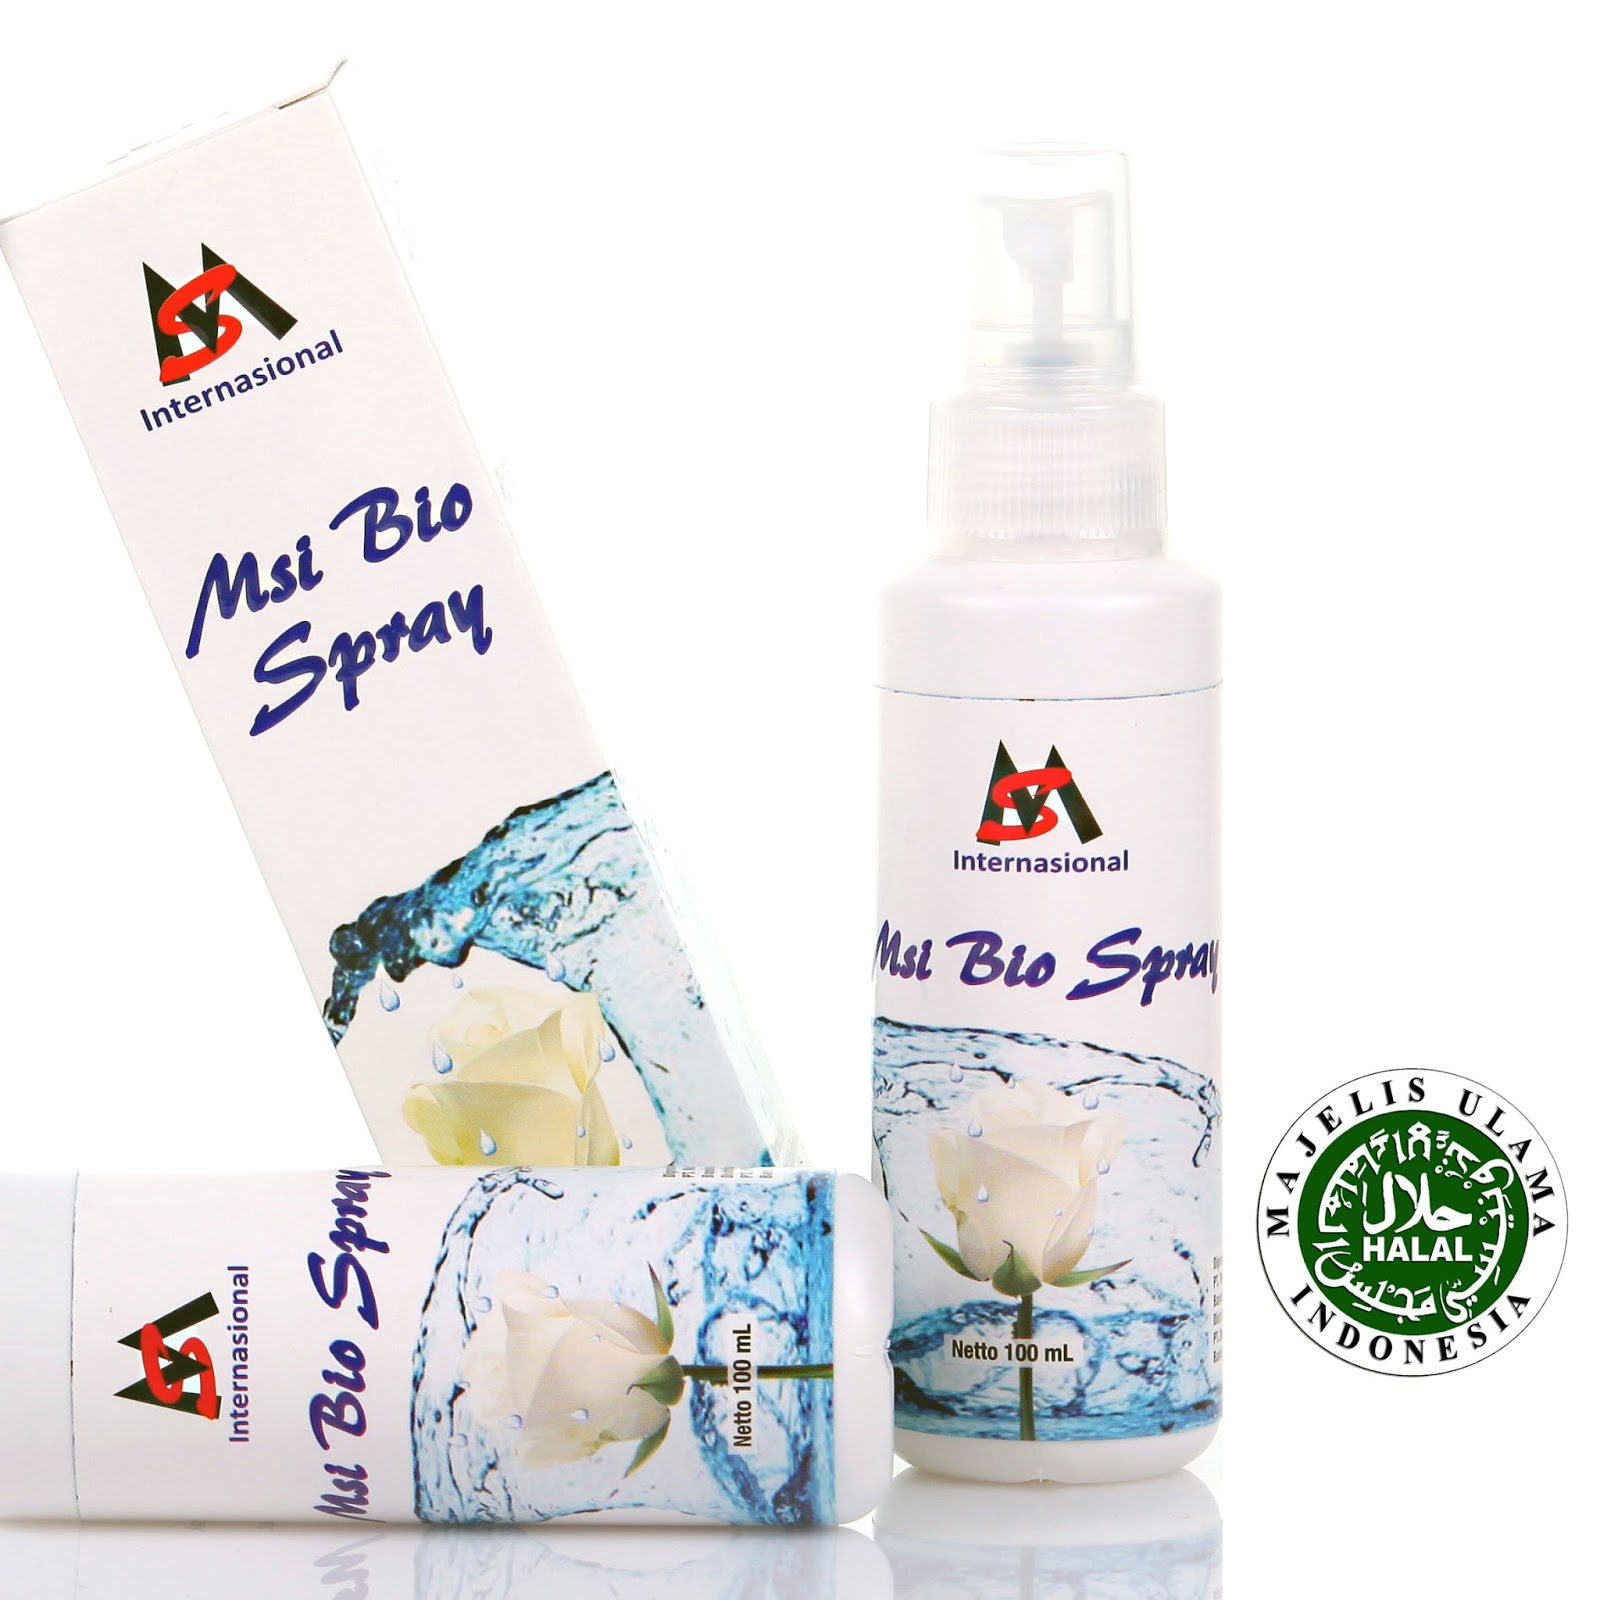 MSI Collagen Spray / MSI Bio Spray Collagen Face Serum